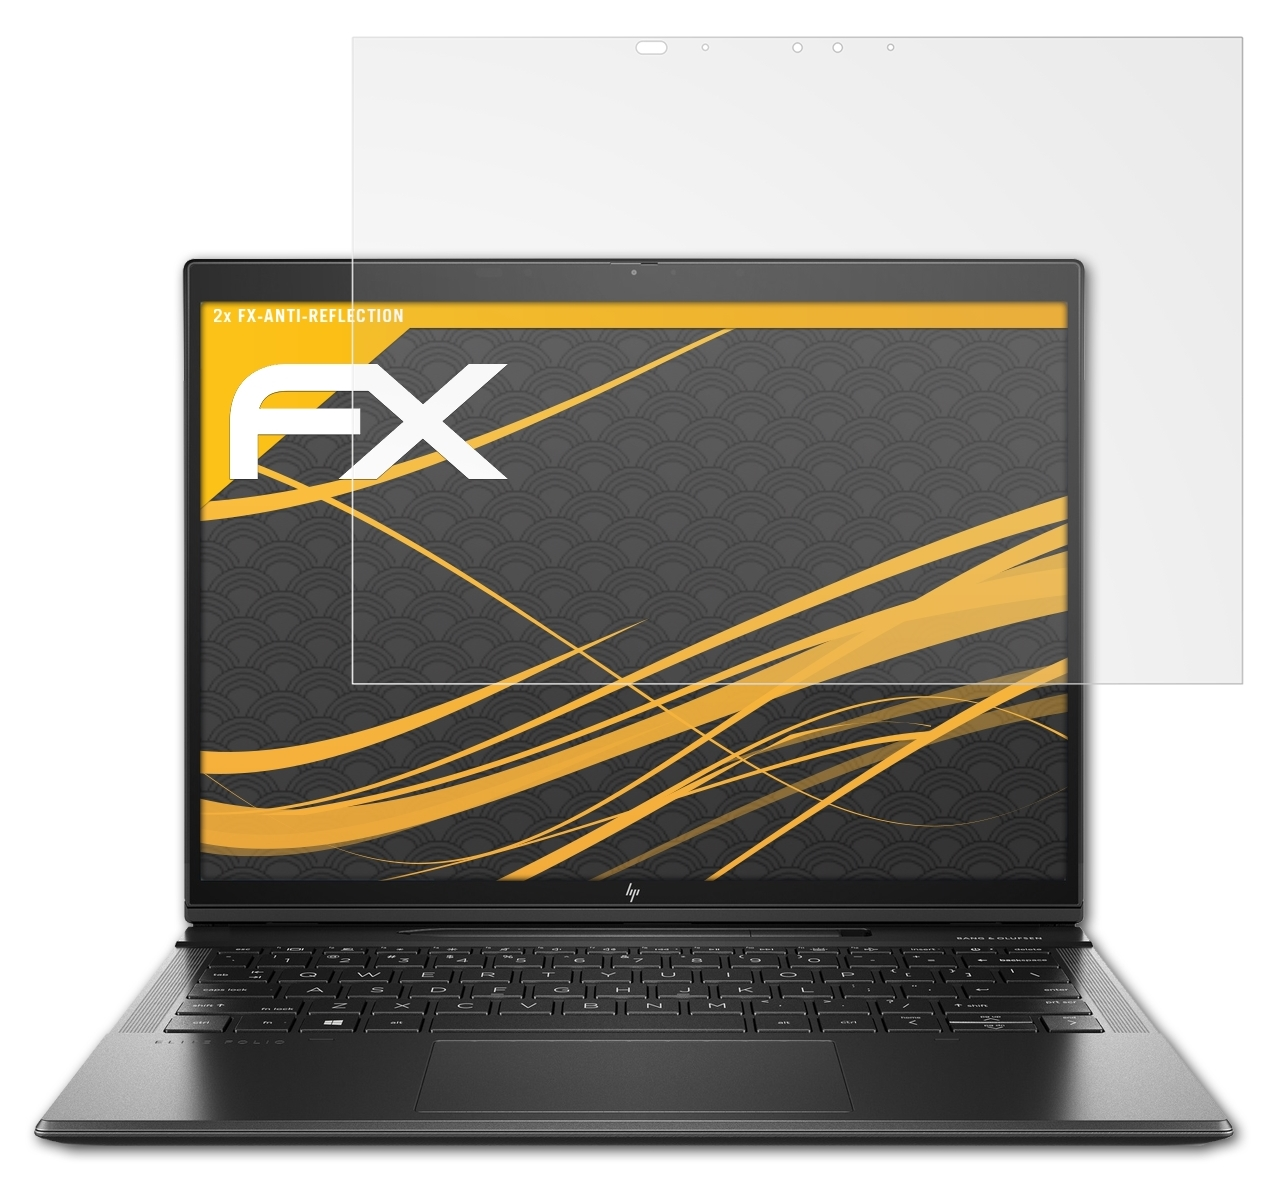 HP FX-Antireflex Folio) Elite ATFOLIX 2x Displayschutz(für